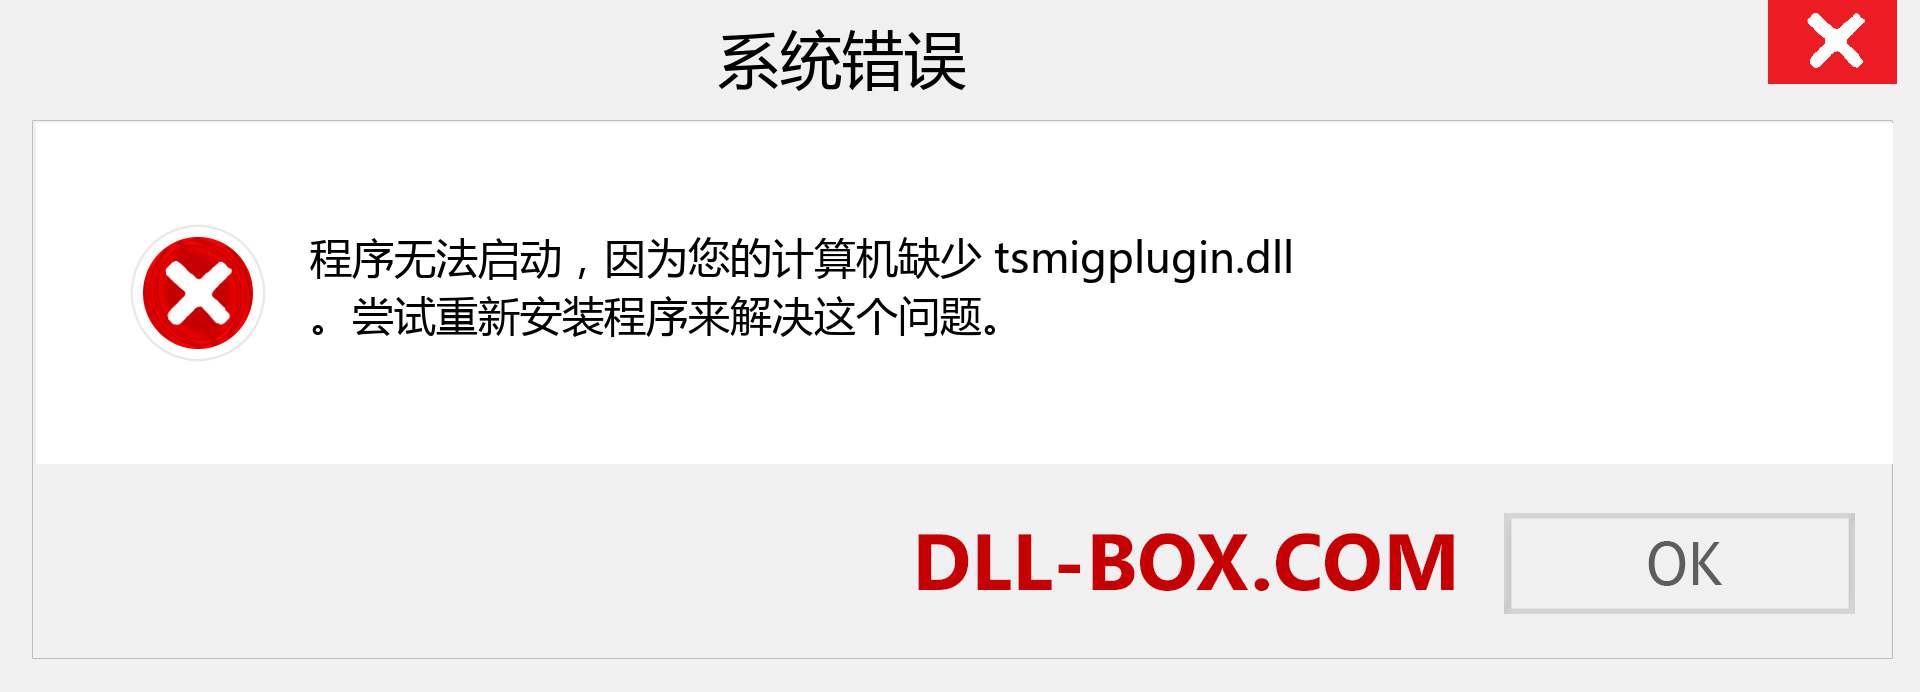 tsmigplugin.dll 文件丢失？。 适用于 Windows 7、8、10 的下载 - 修复 Windows、照片、图像上的 tsmigplugin dll 丢失错误